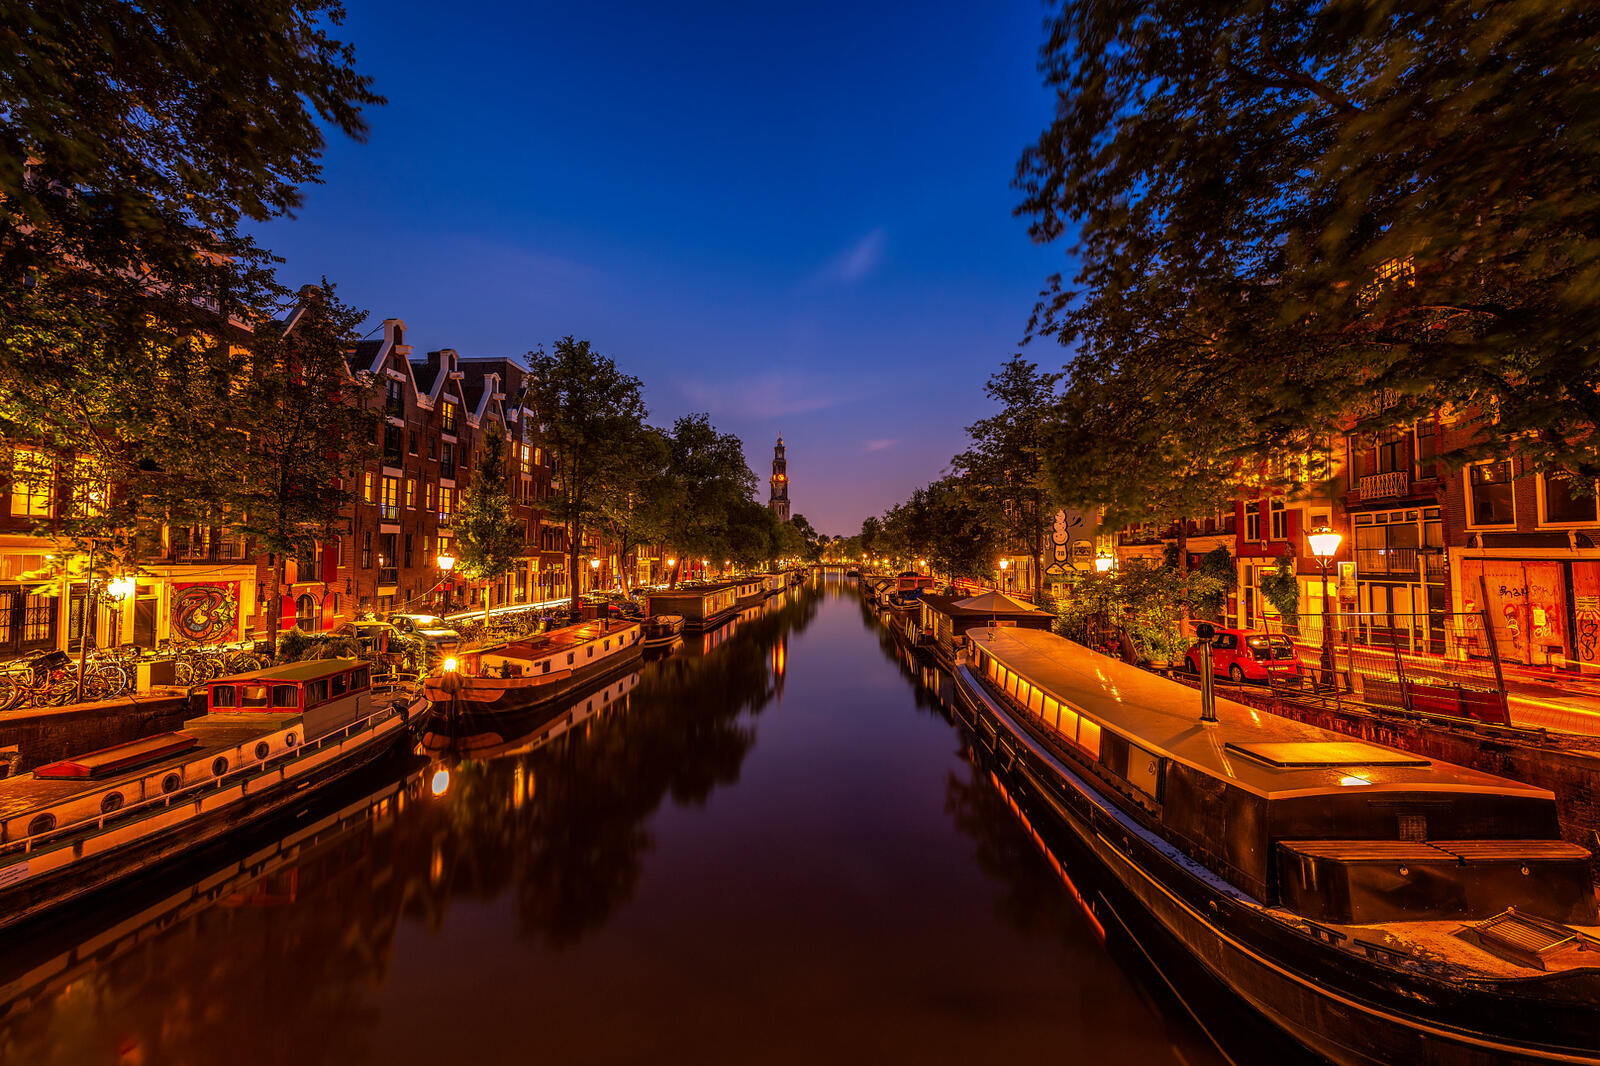 Обои Amsterdam Holland Canal View at Night на рабочий стол